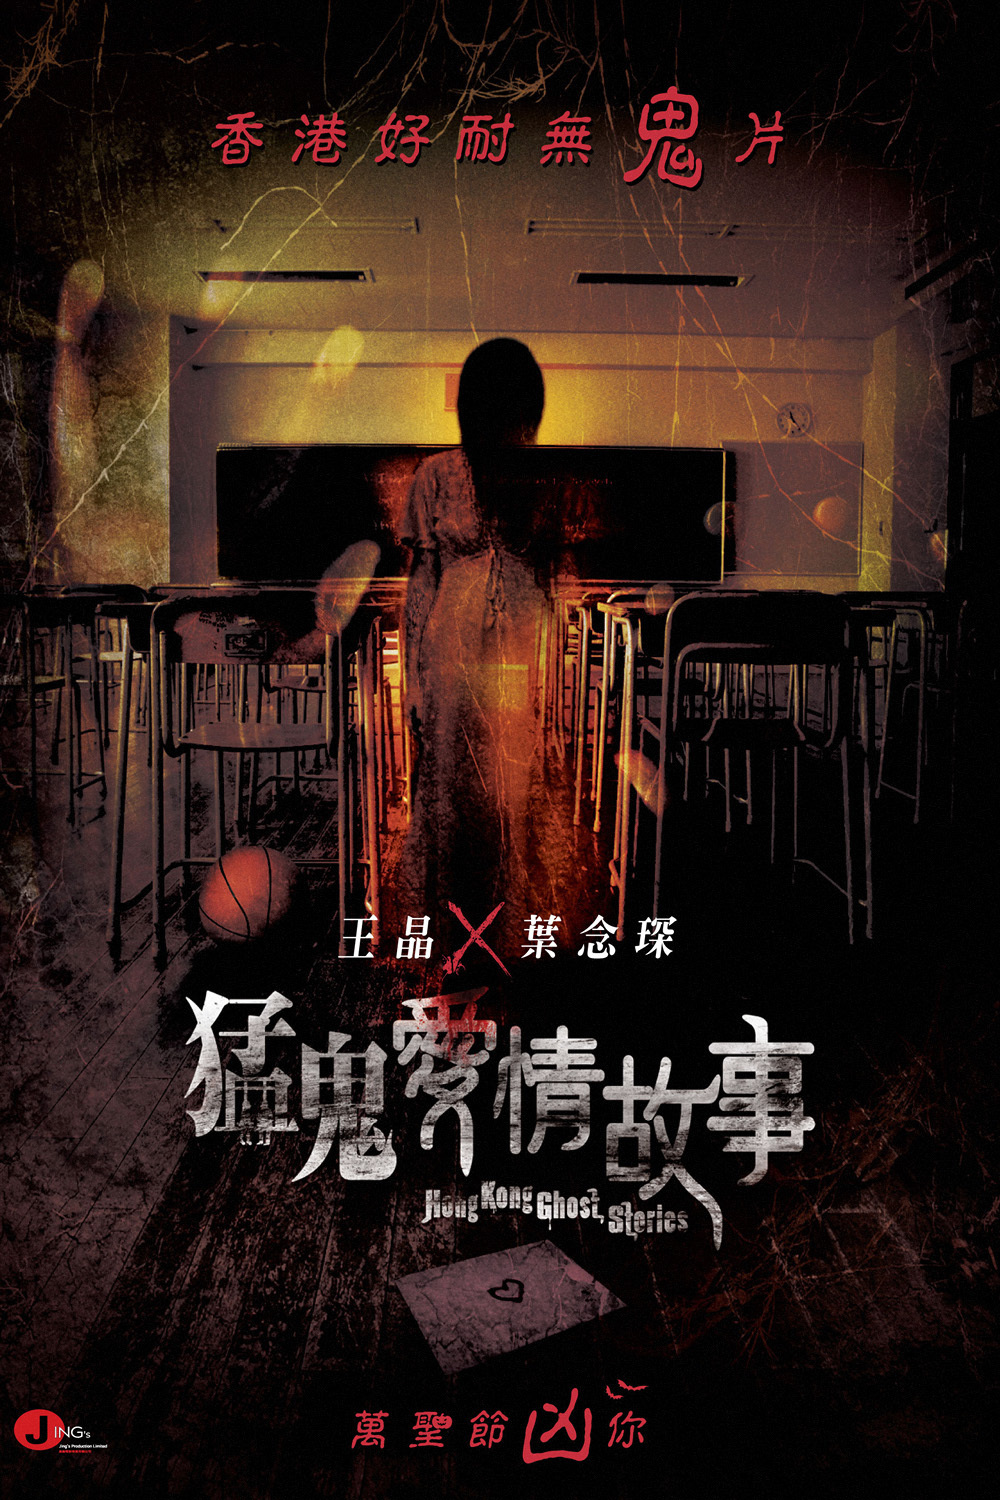 Hong Kong Ghost Stories (2011) Screenshot 2 